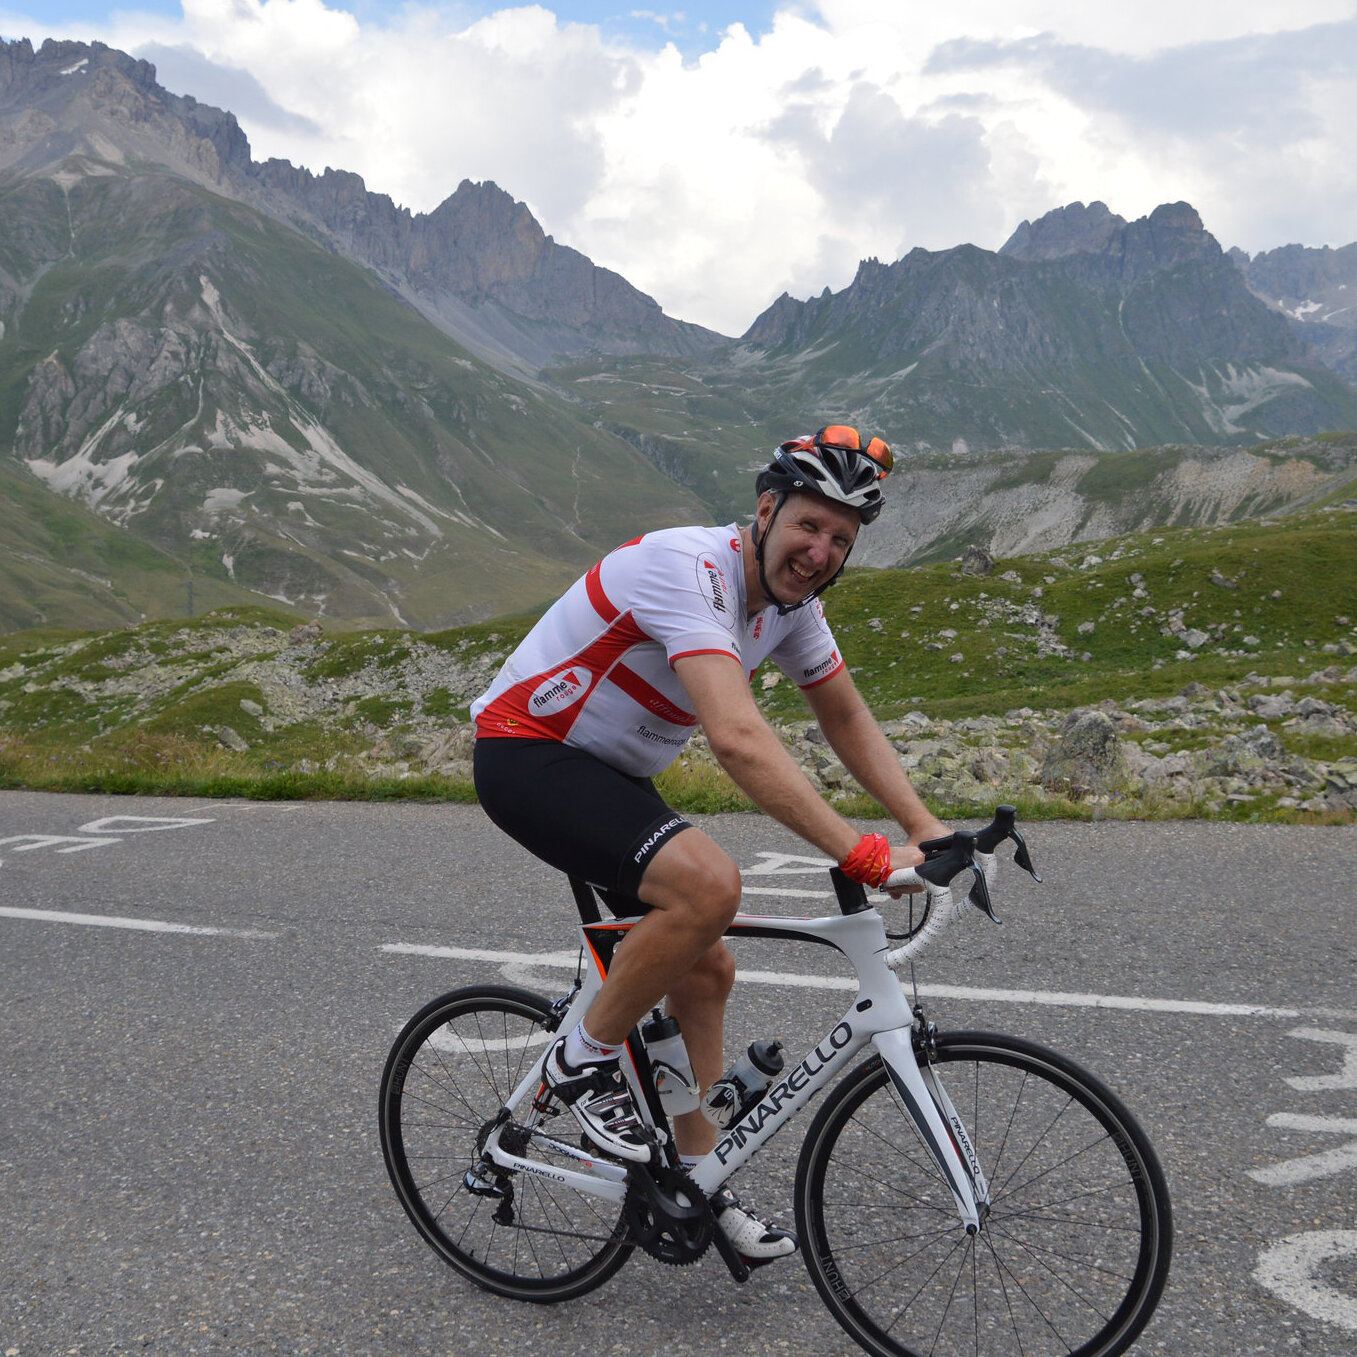 Route des Grandes Alpes cycling tour — Bike-Alive